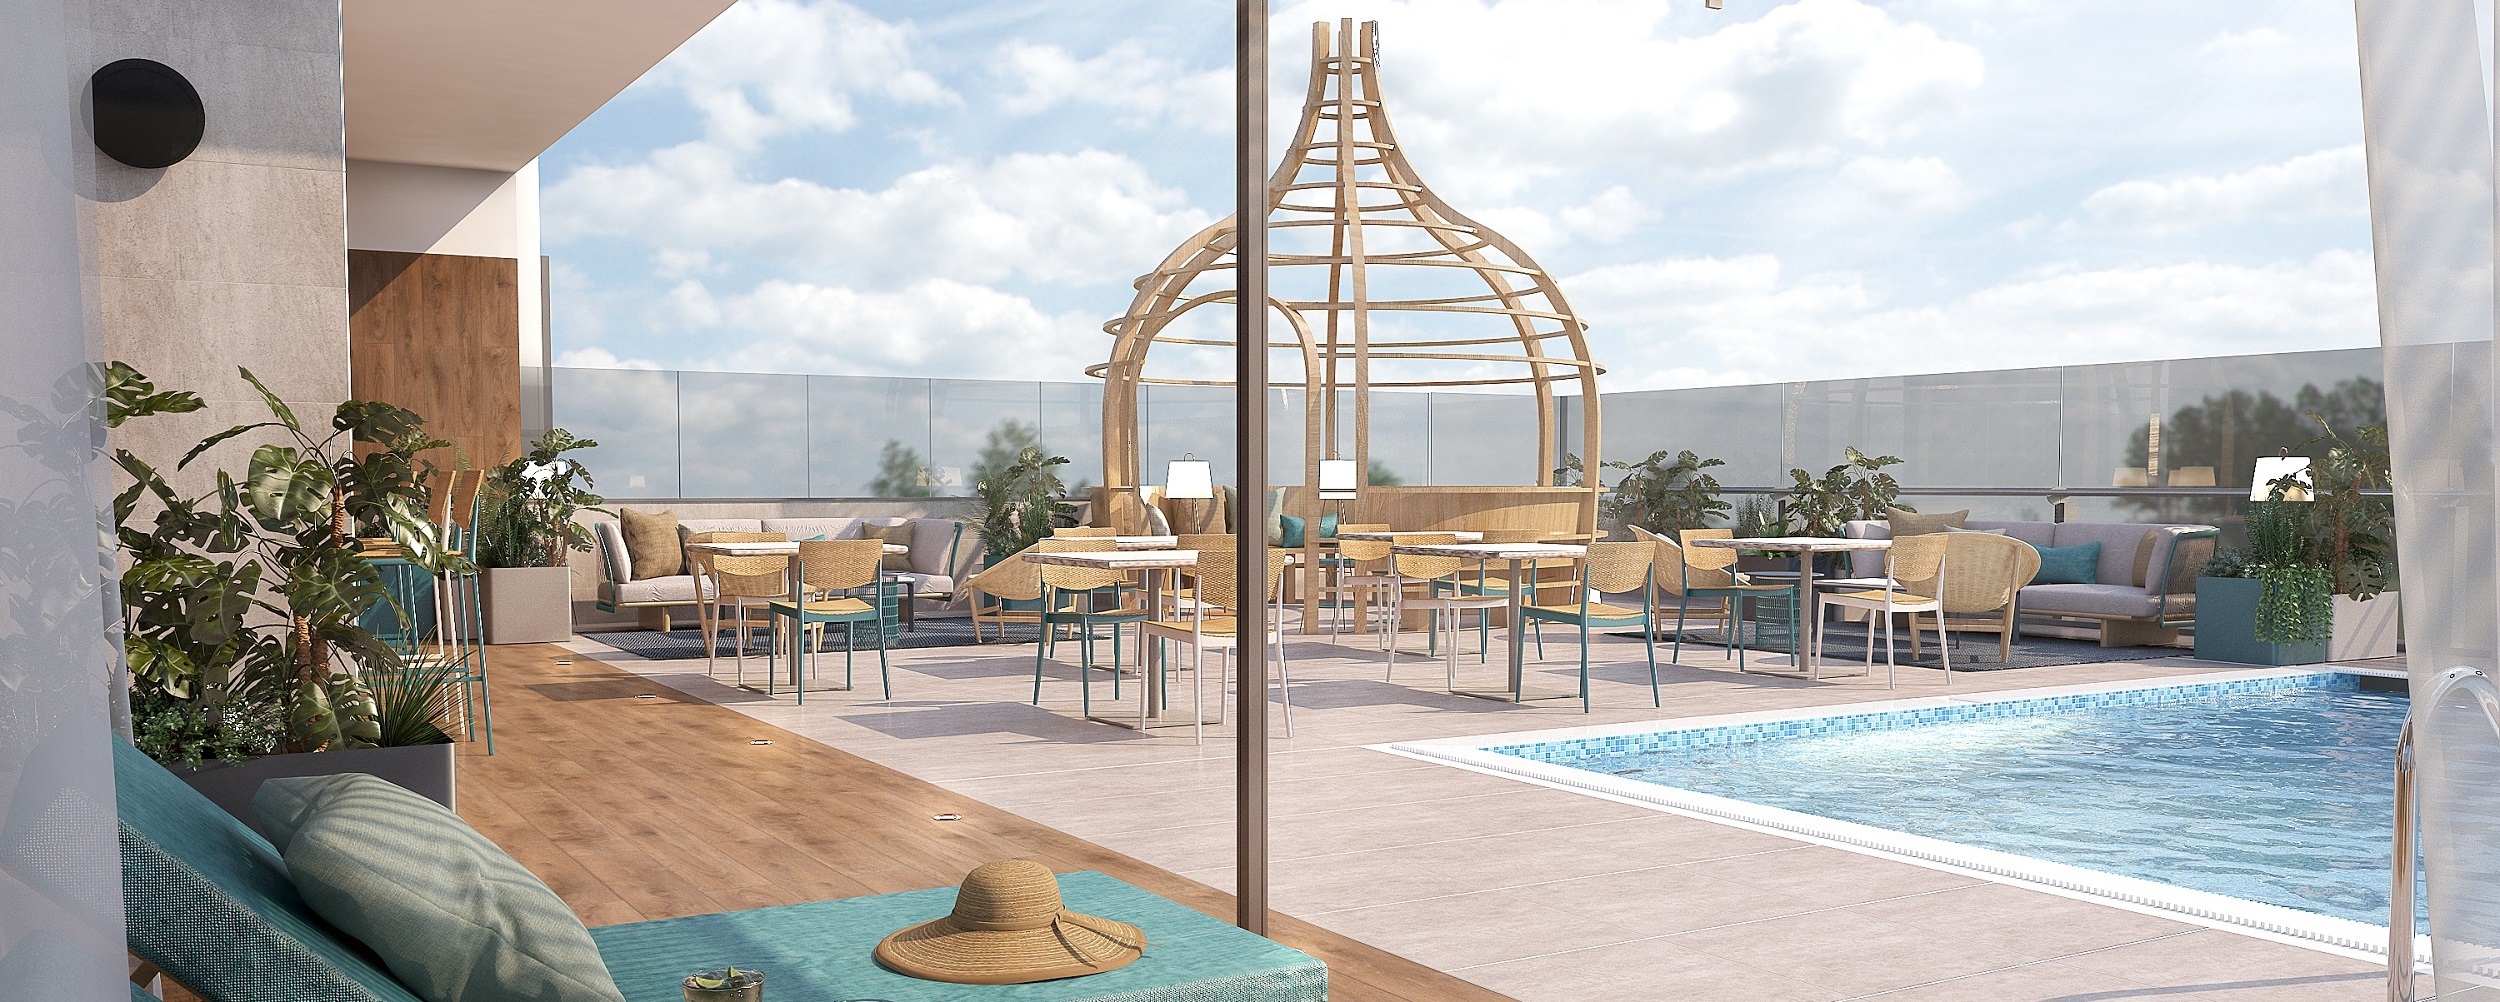 Von der Luftfahrt inspiriert: Neues Fünf-Sterne-Hotel „Amelia“ eröffnet im Juni im bulgarischen Albena – Erstes Themenhotel des Urlaubsresorts am Schwarzen Meer